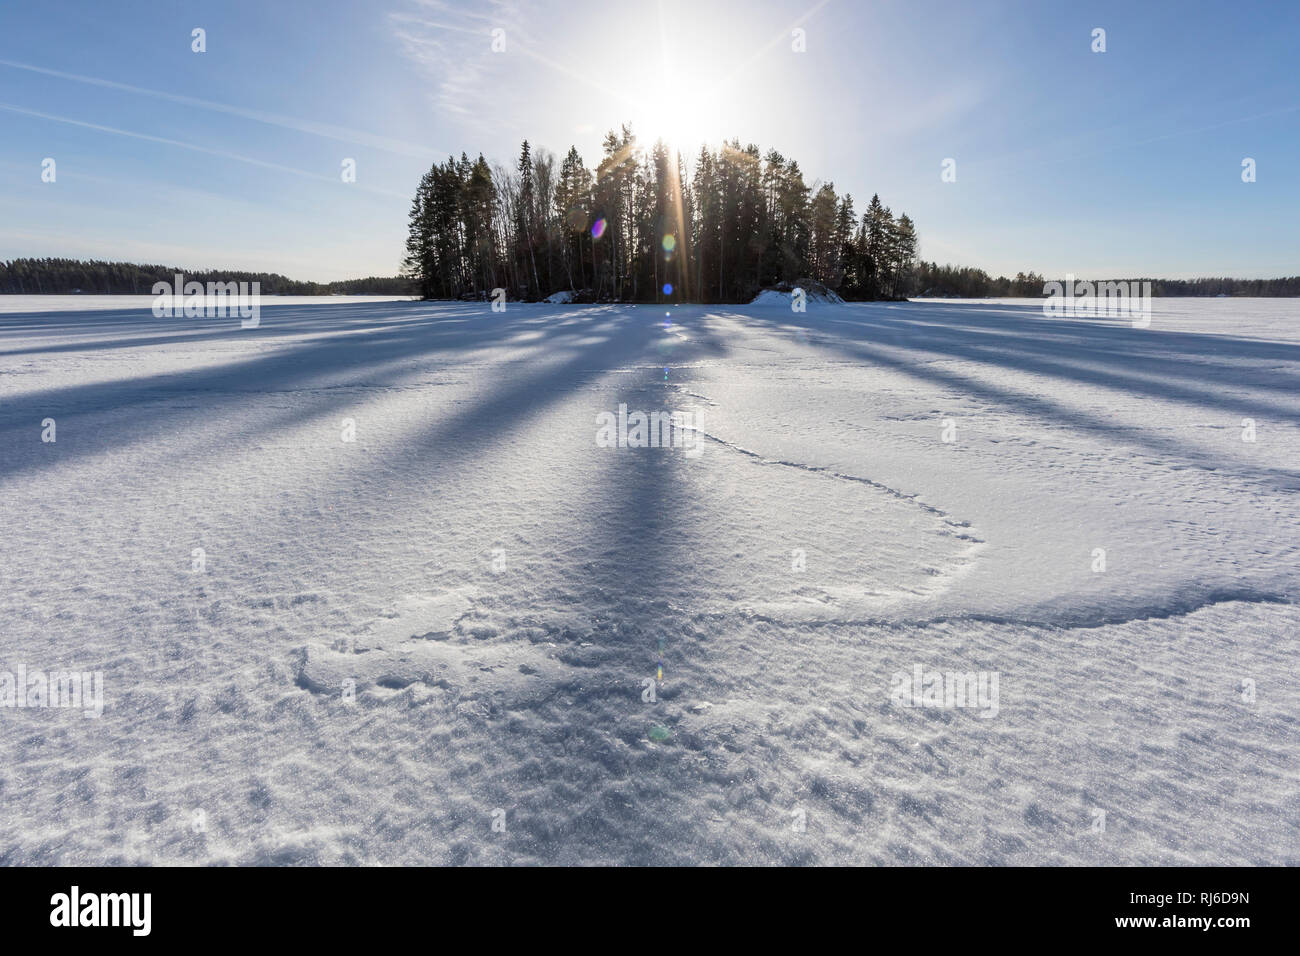 Finnland, Saimaa-Gebiet, Insel im Winter mit Schnee und Sonne mit Schatten Stock Photo